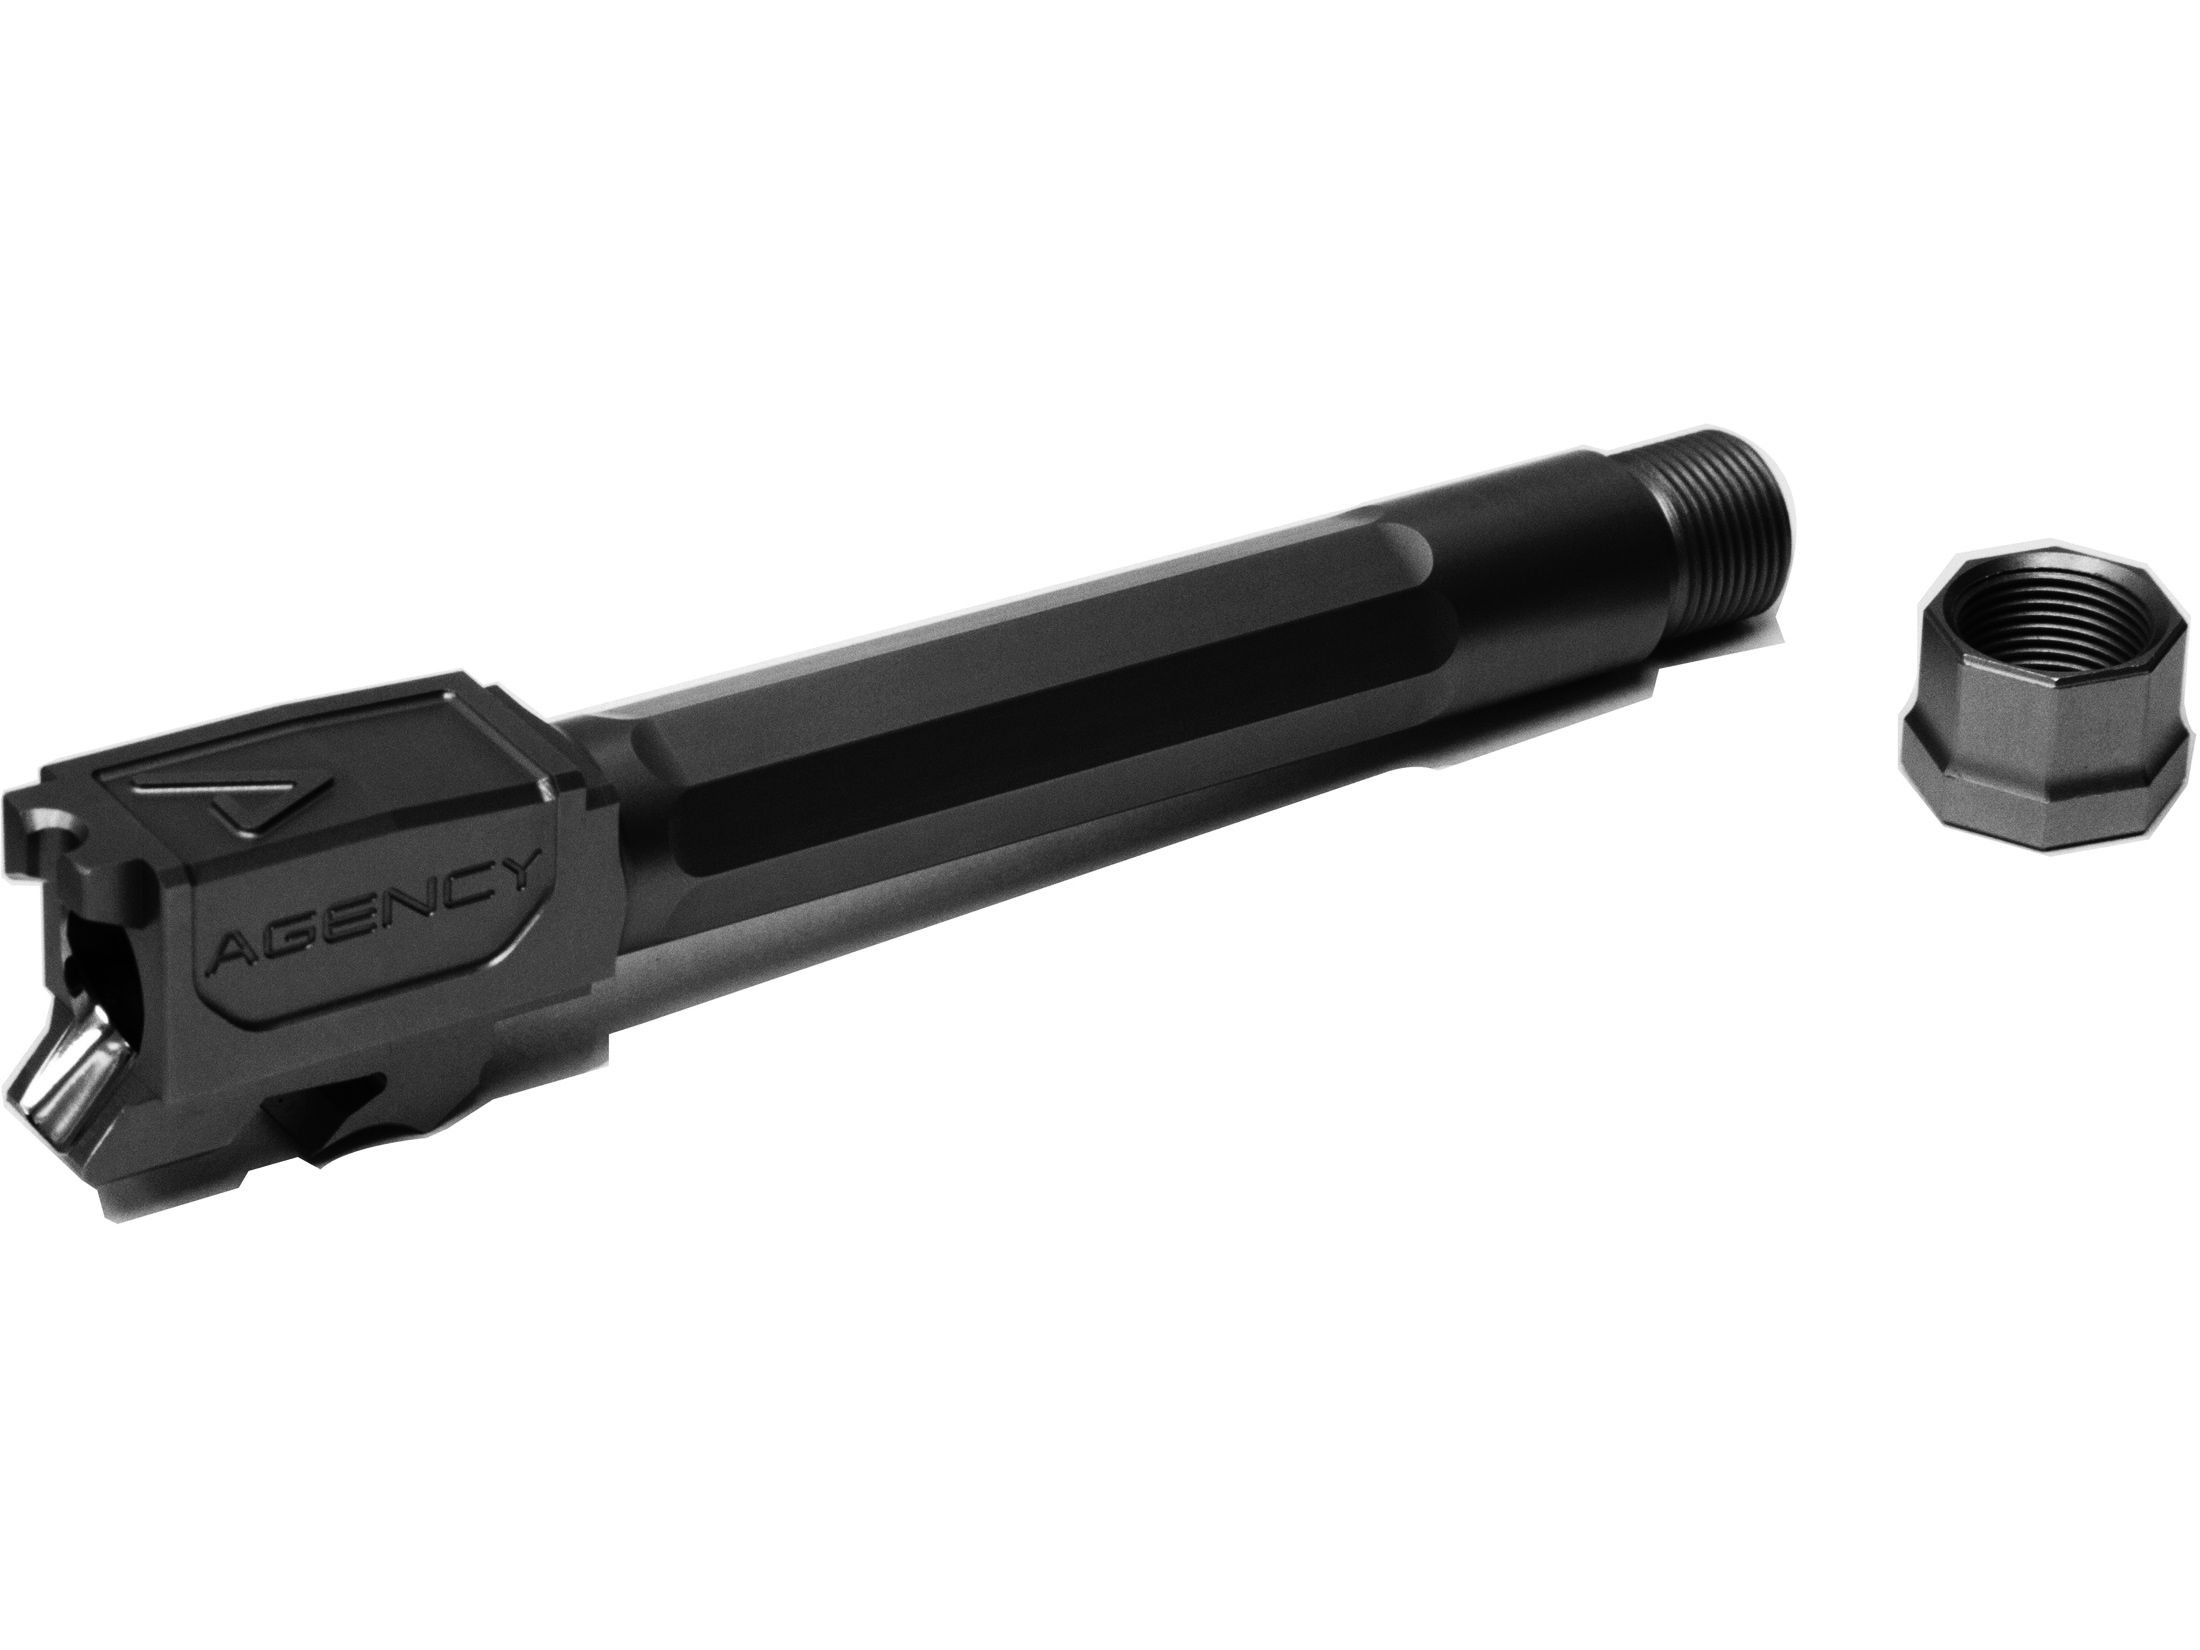 Agency Arms Barrel S W M P M2 0 Premier Line 4 25 9mm Luger 1 10 Twist